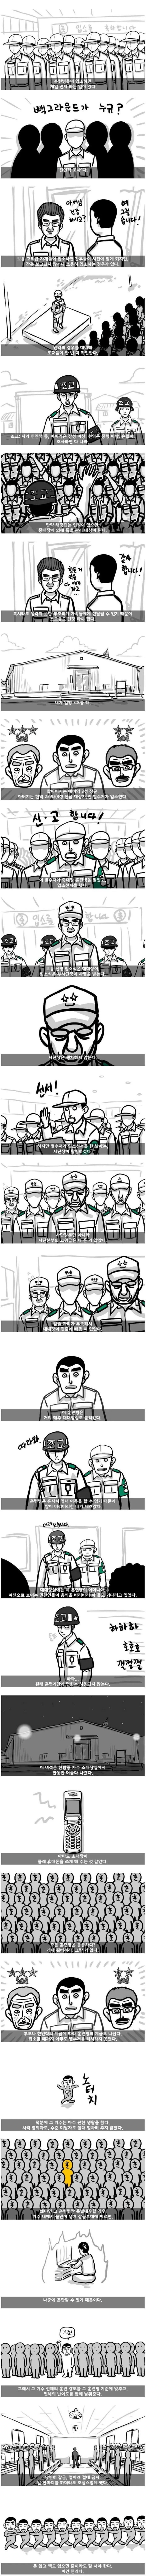 [만화] 군대에 별수저가 입소하면 벌어지는 영향력.JPG